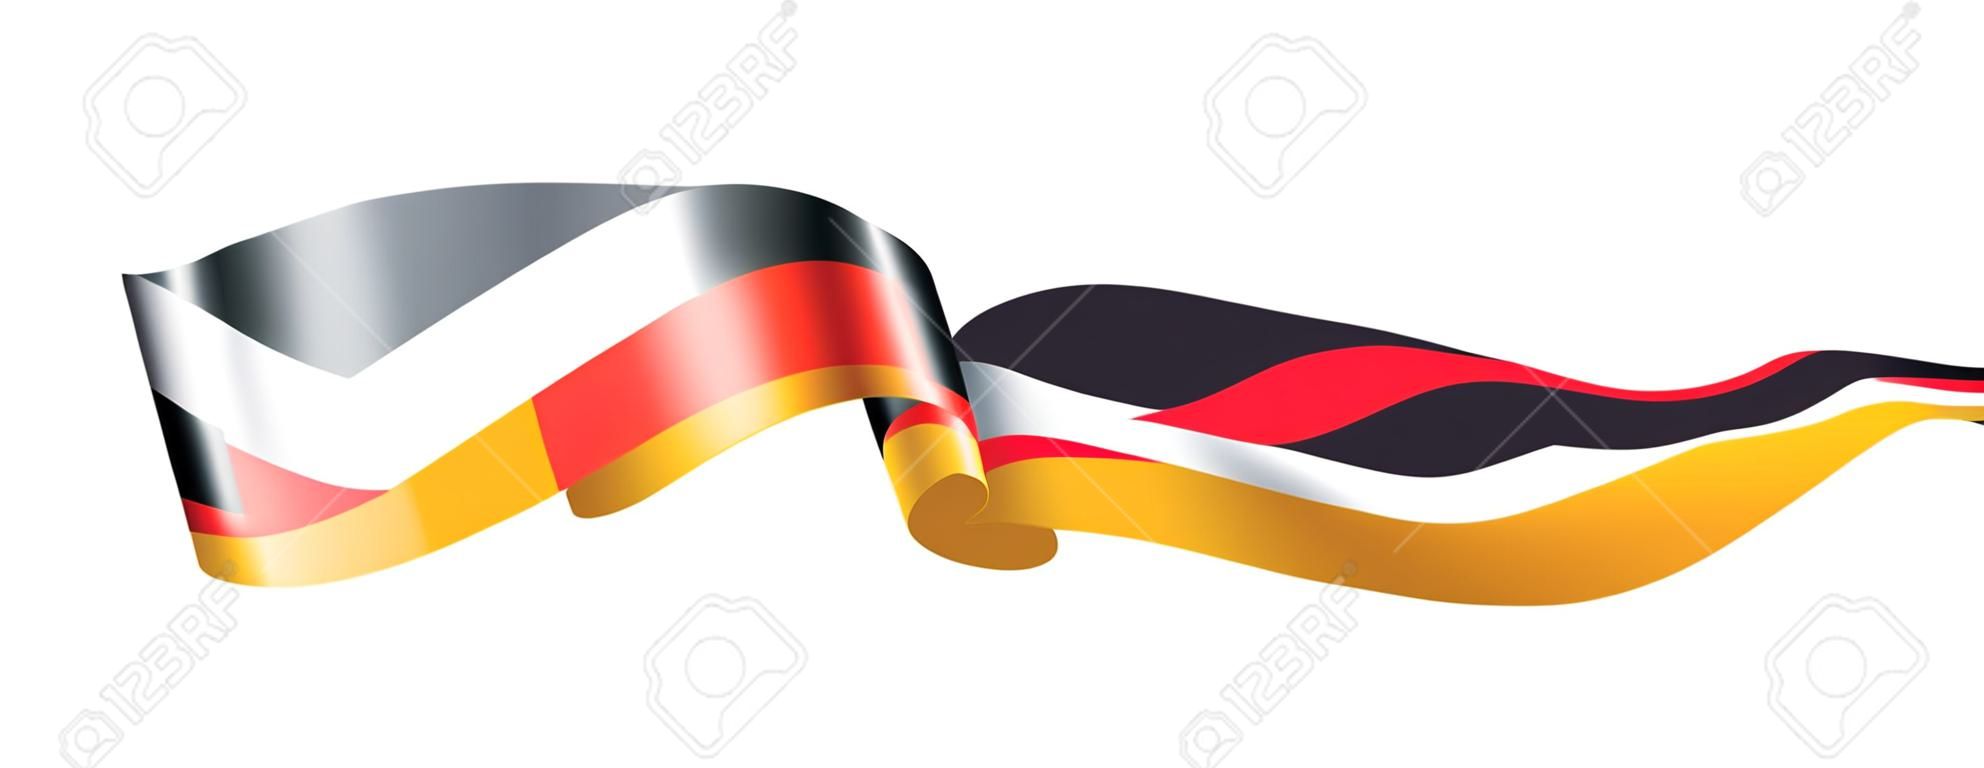 Deutschland-Flagge, Vektorillustration auf einem weißen Hintergrund.